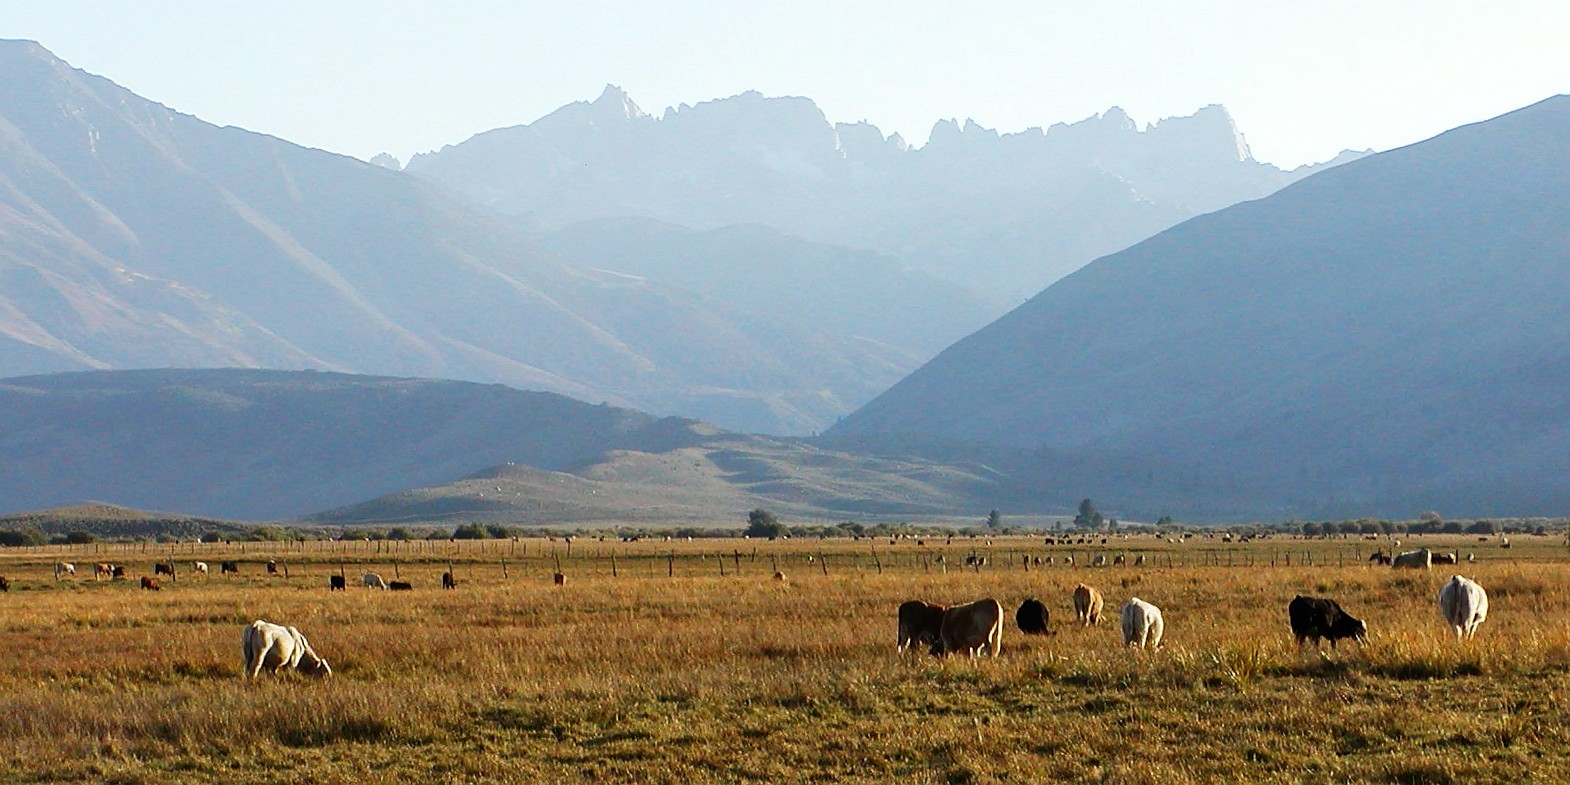 Sierra Nevada with Sawtooth Ridge